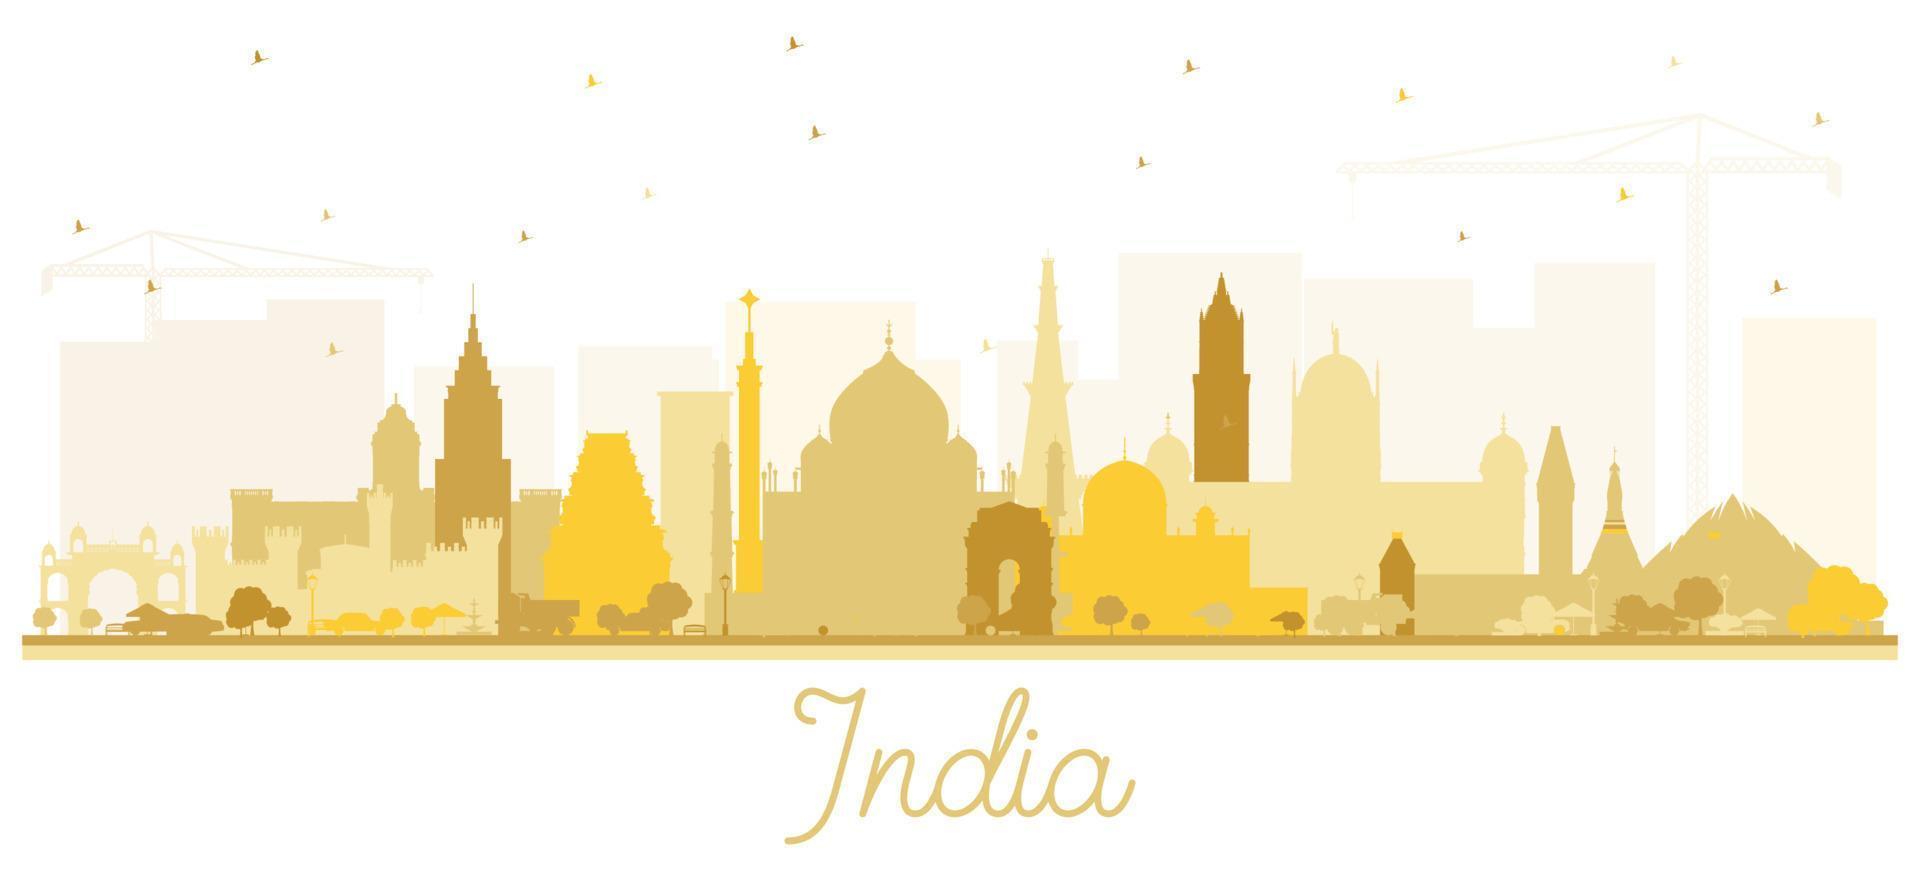 silhueta do horizonte da cidade da índia com edifícios dourados isolados no branco. vetor